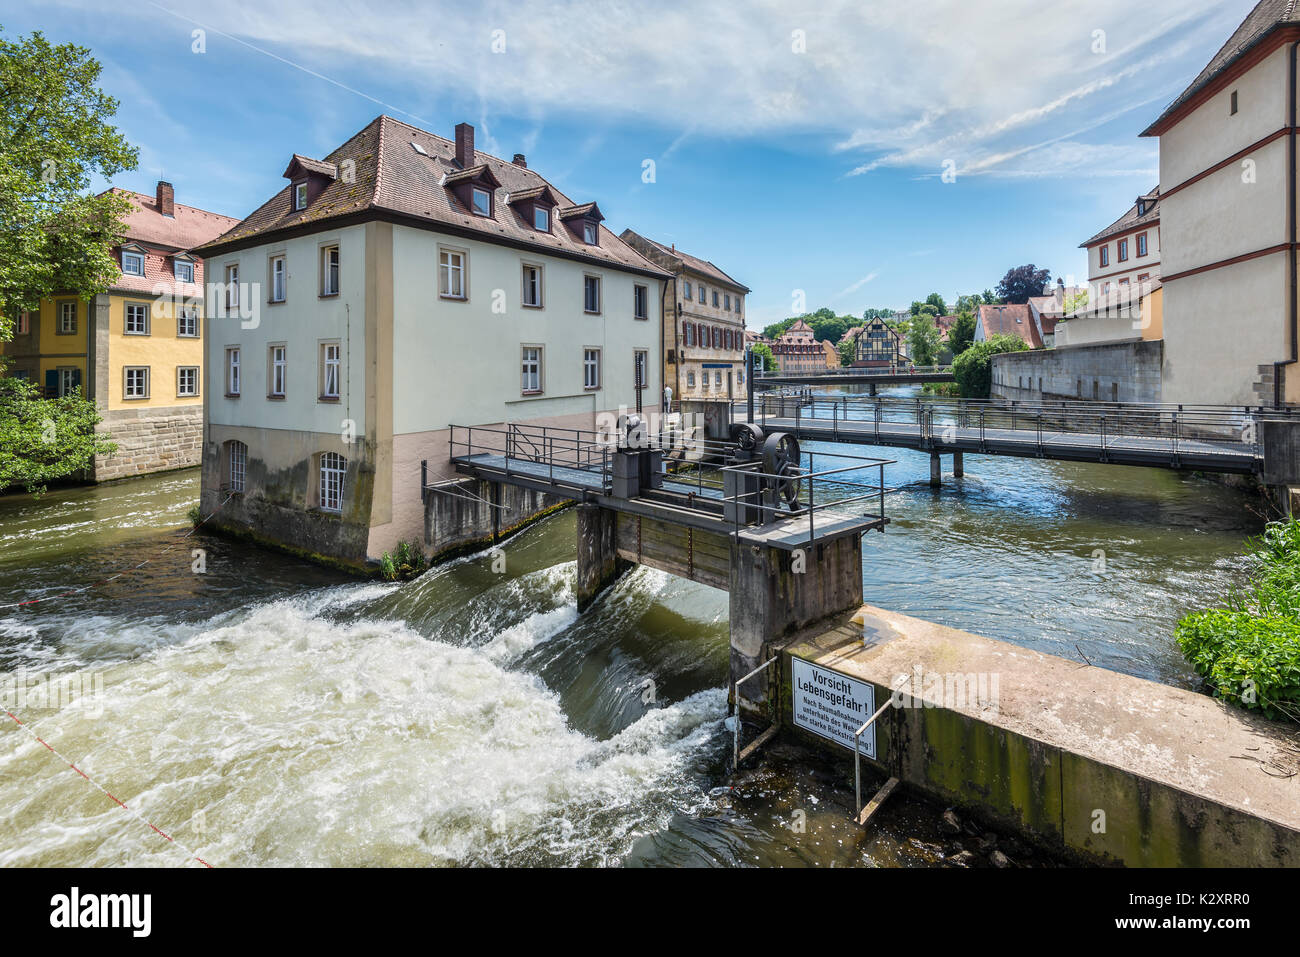 Bamberg, Deutschland - 22. Mai 2016: Dämmen, Brücken, alte Häuser auf künstlichen Inseln und Ufer der Regnitz. Altstadt von Bamberg ist eine Stockfoto